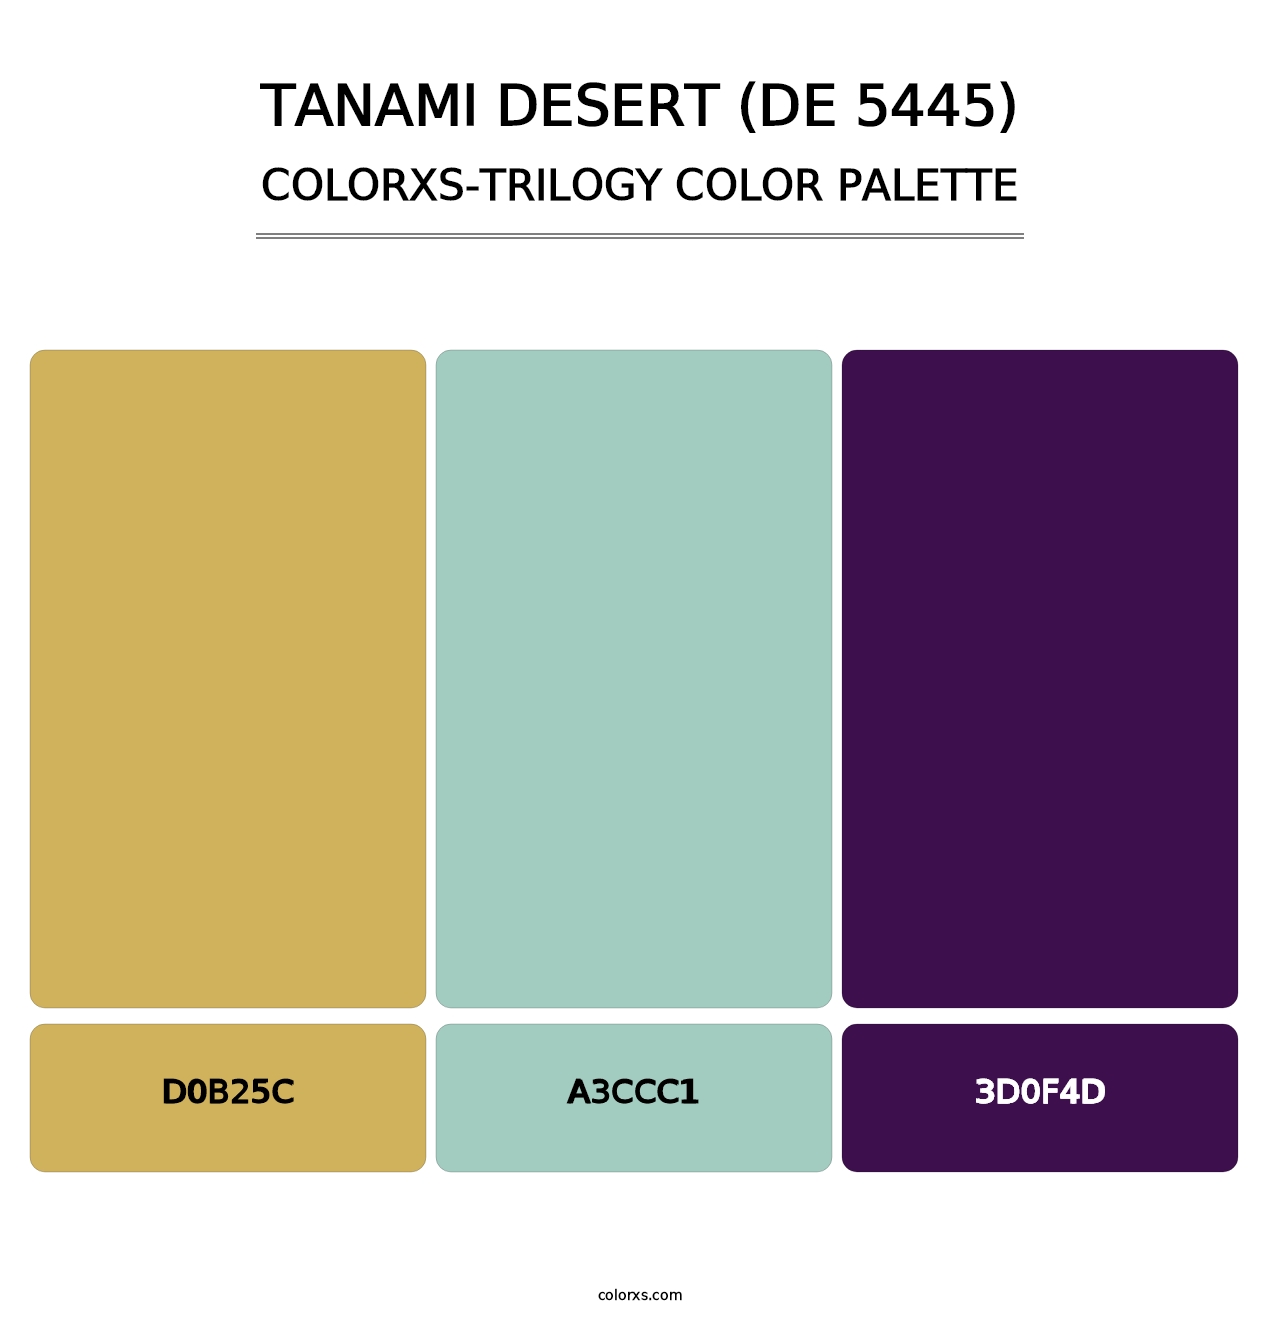 Tanami Desert (DE 5445) - Colorxs Trilogy Palette